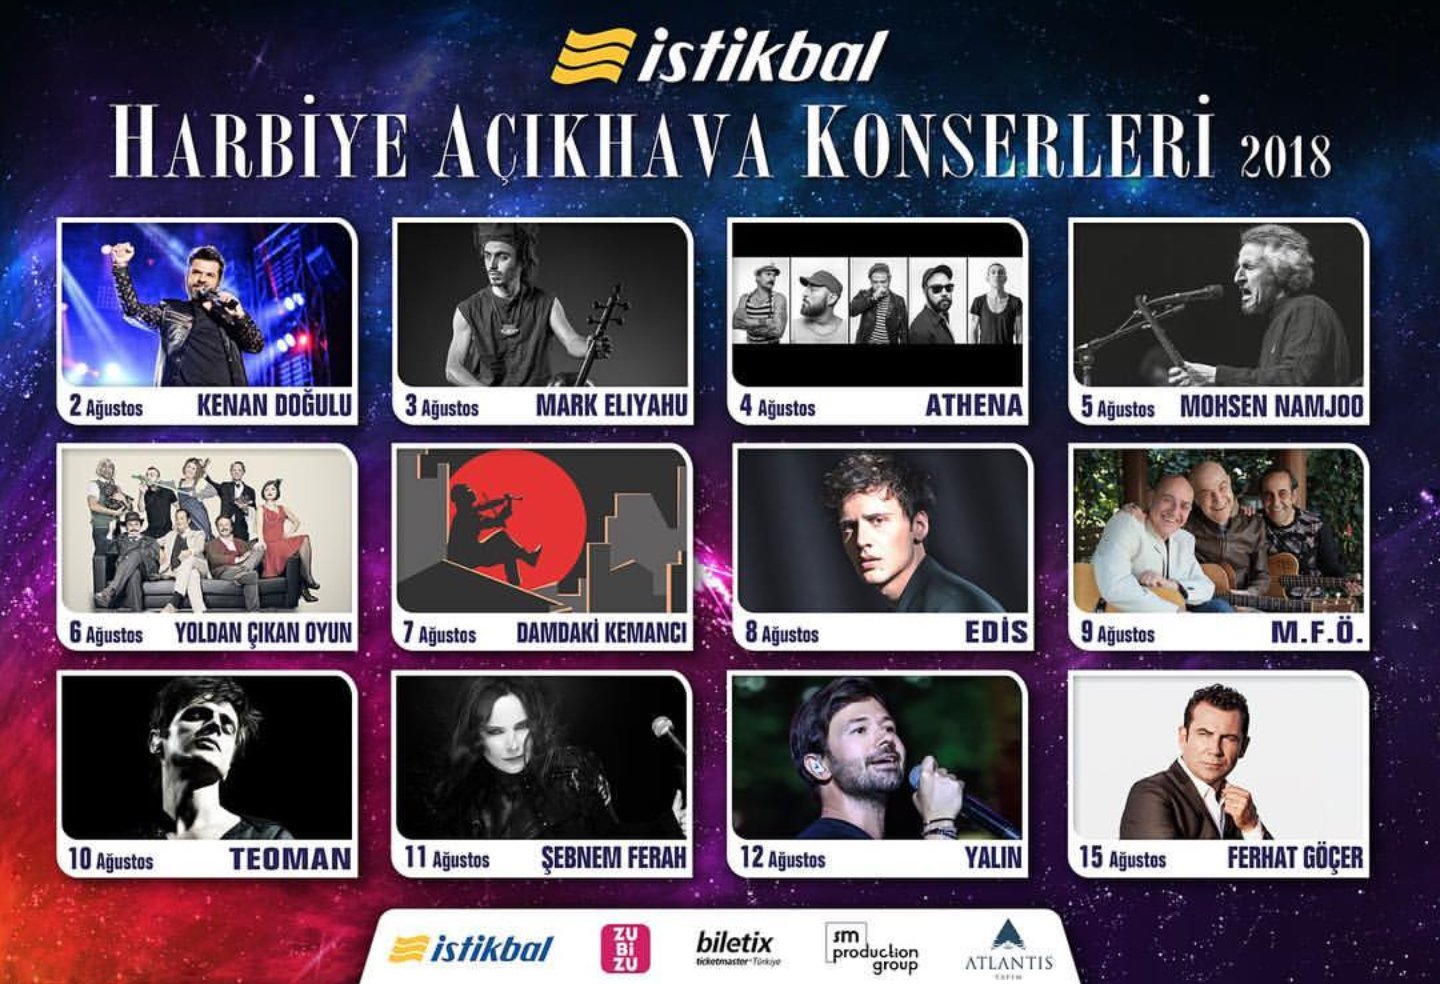 eurovision turkiye on twitter turkiye 2 15 agustos tarihleri arasi harbiye acikhava konserleri nde kenan dogulu athena ve mfo sahne alacak biletler biletix te https t co x1nczrztga